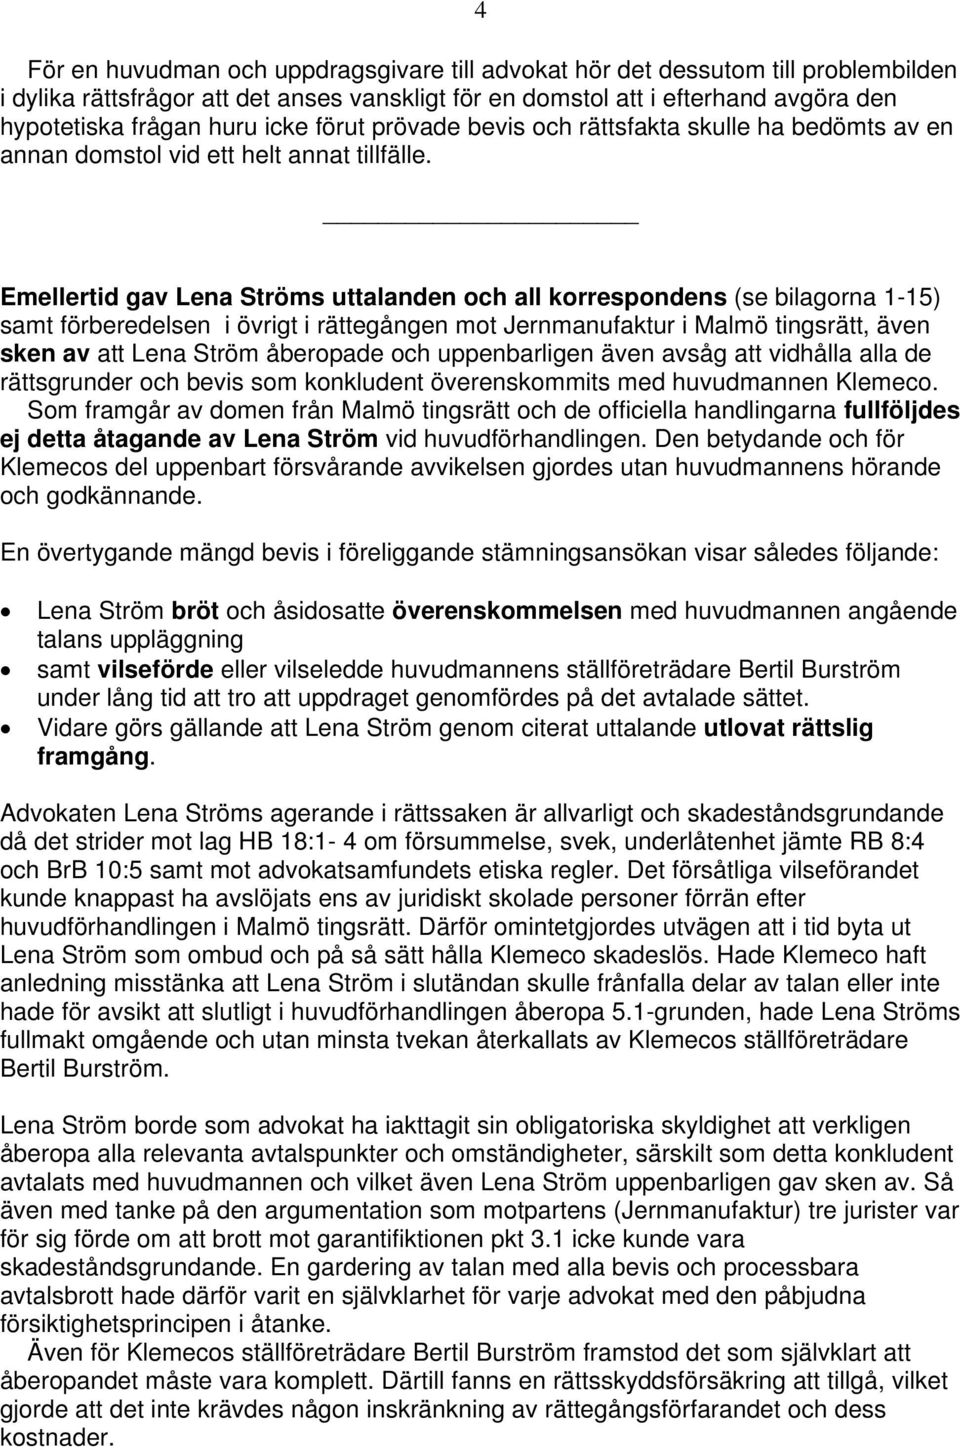 Emellertid gav Lena Ströms uttalanden och all korrespondens (se bilagorna 1-15) samt förberedelsen i övrigt i rättegången mot Jernmanufaktur i Malmö tingsrätt, även sken av att Lena Ström åberopade